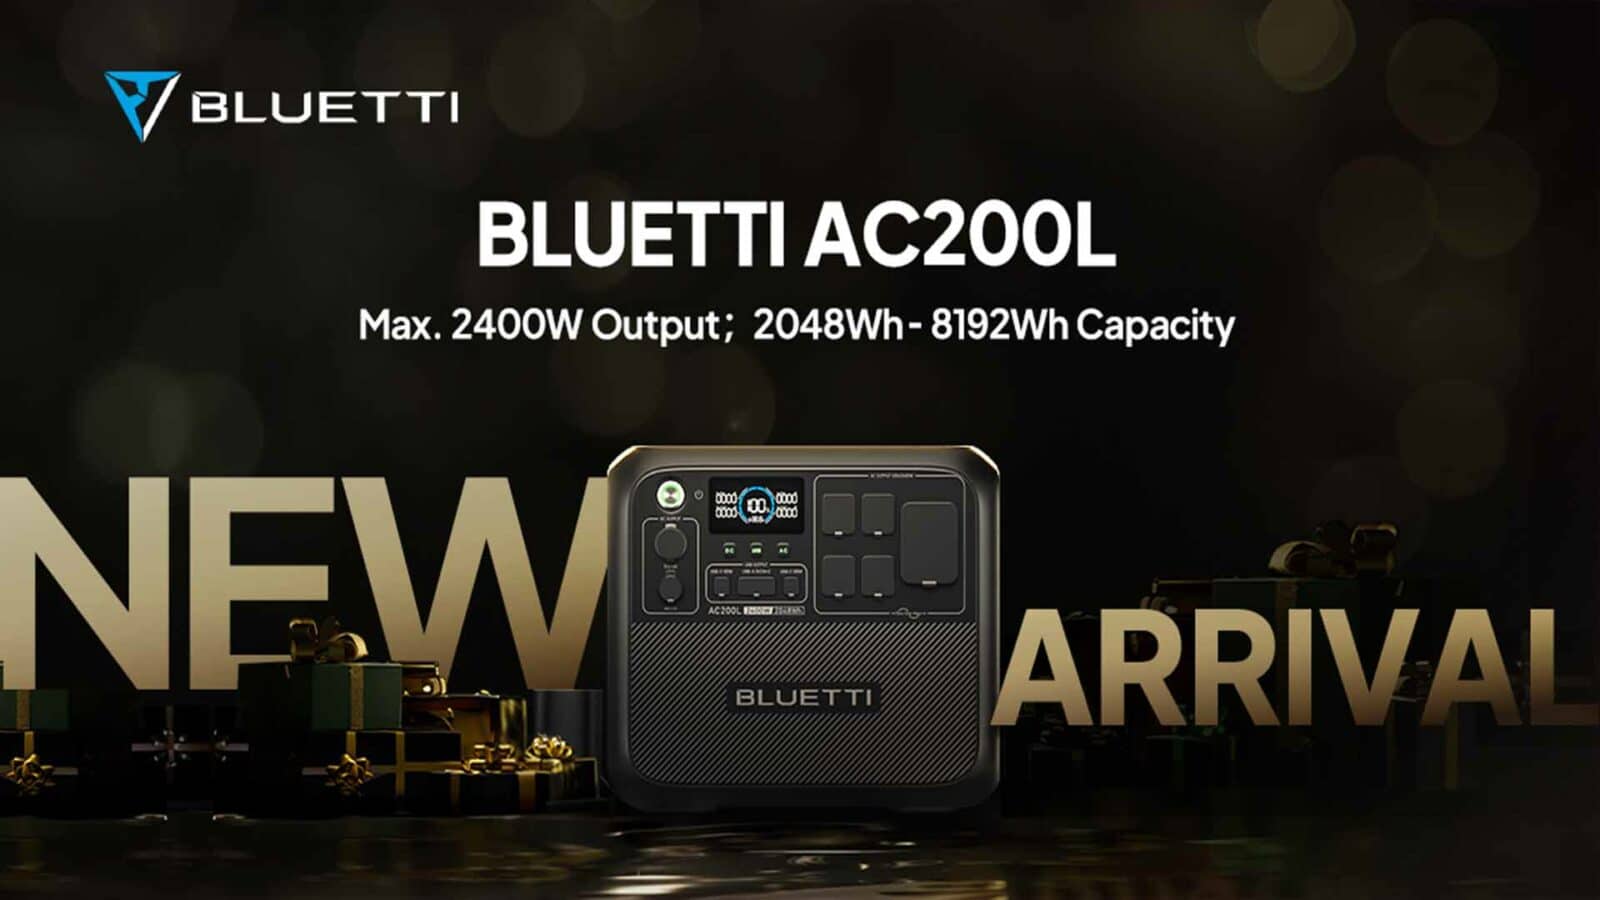 Un nouveau modèle du bluetti ac200l avec une puissance maximale de 2400w et une capacité de 8192wh est arrivé.